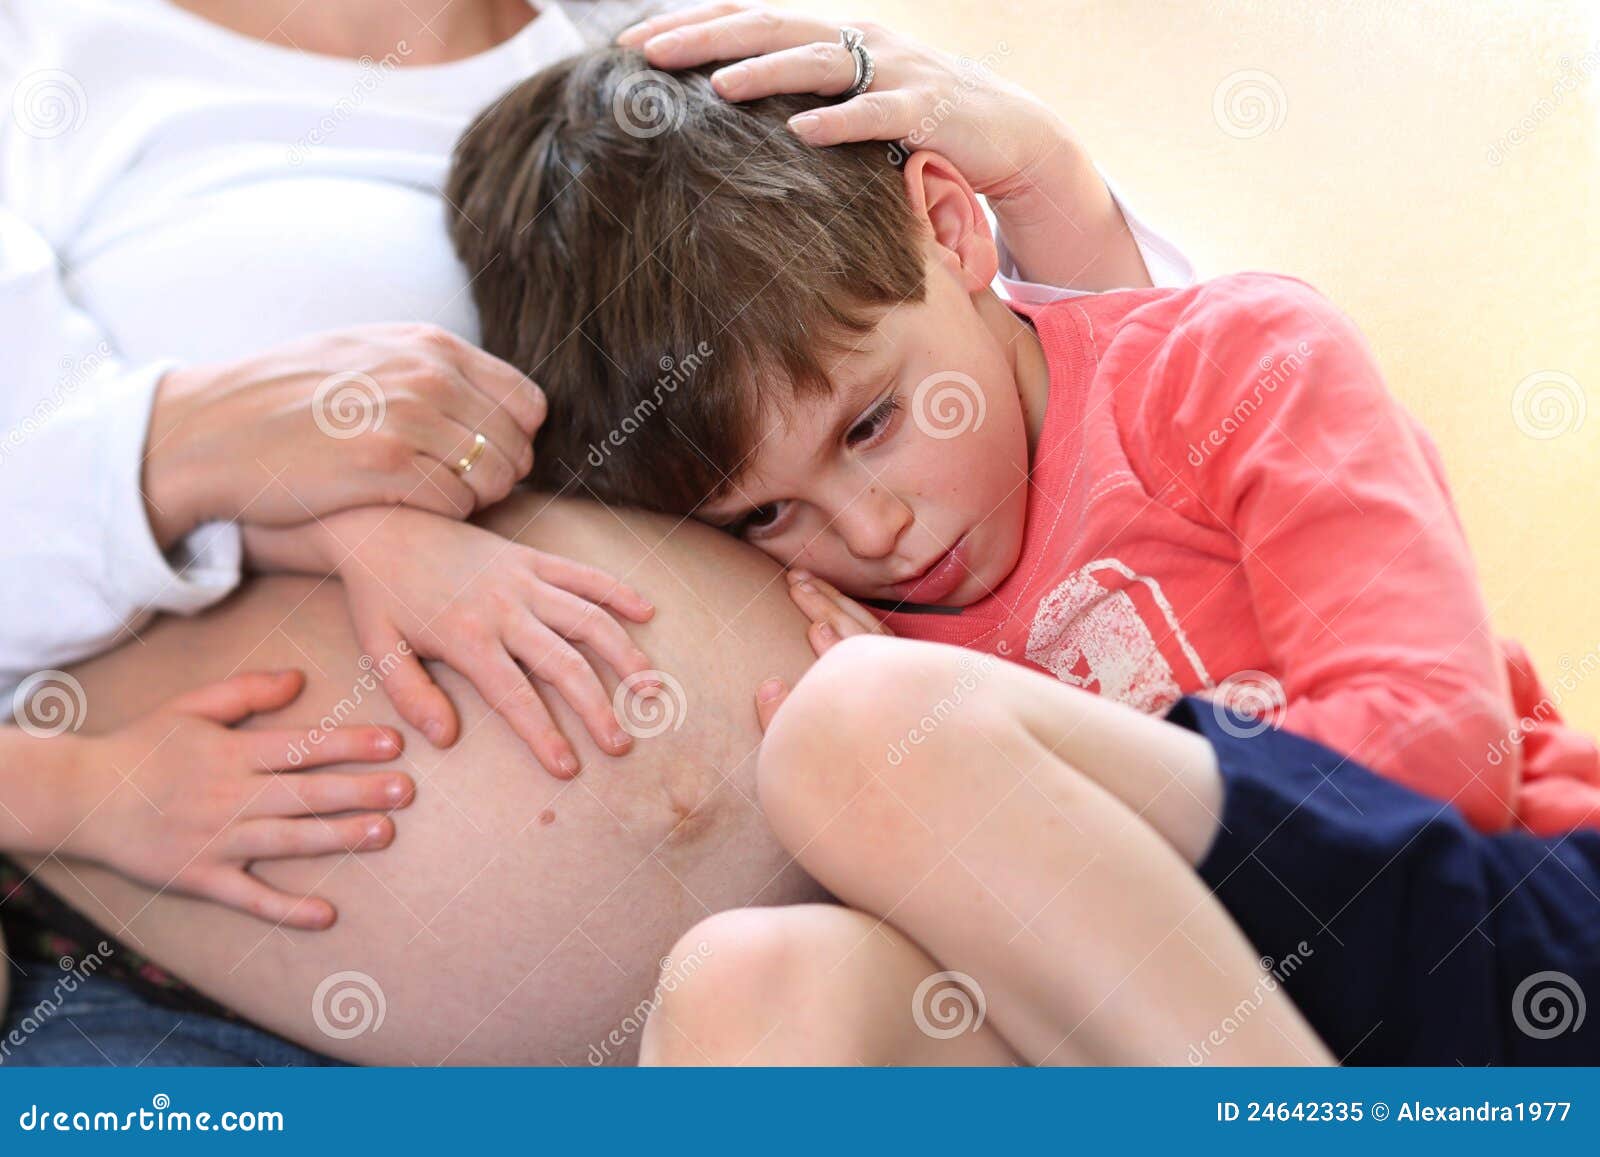 Трогать большого мальчика. Потрогать детский животик. Мальчик обнимать мальчика живот. Мальчик трогает живот мальчика.